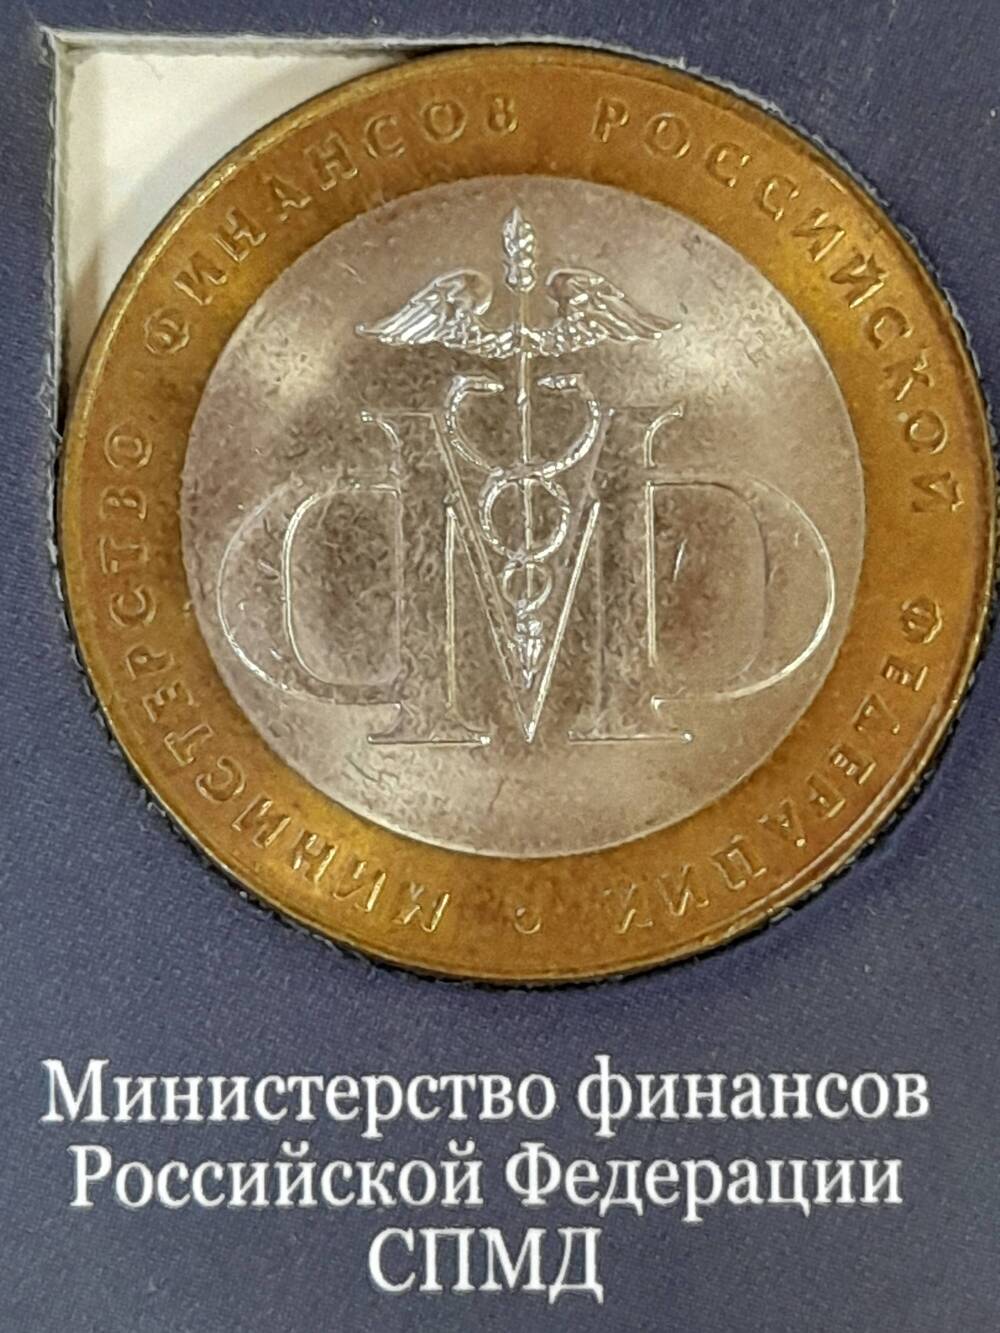 Монета памятная 10 РУБЛЕЙ. Министерство финансов Российской Федерации 2002 г. Россия